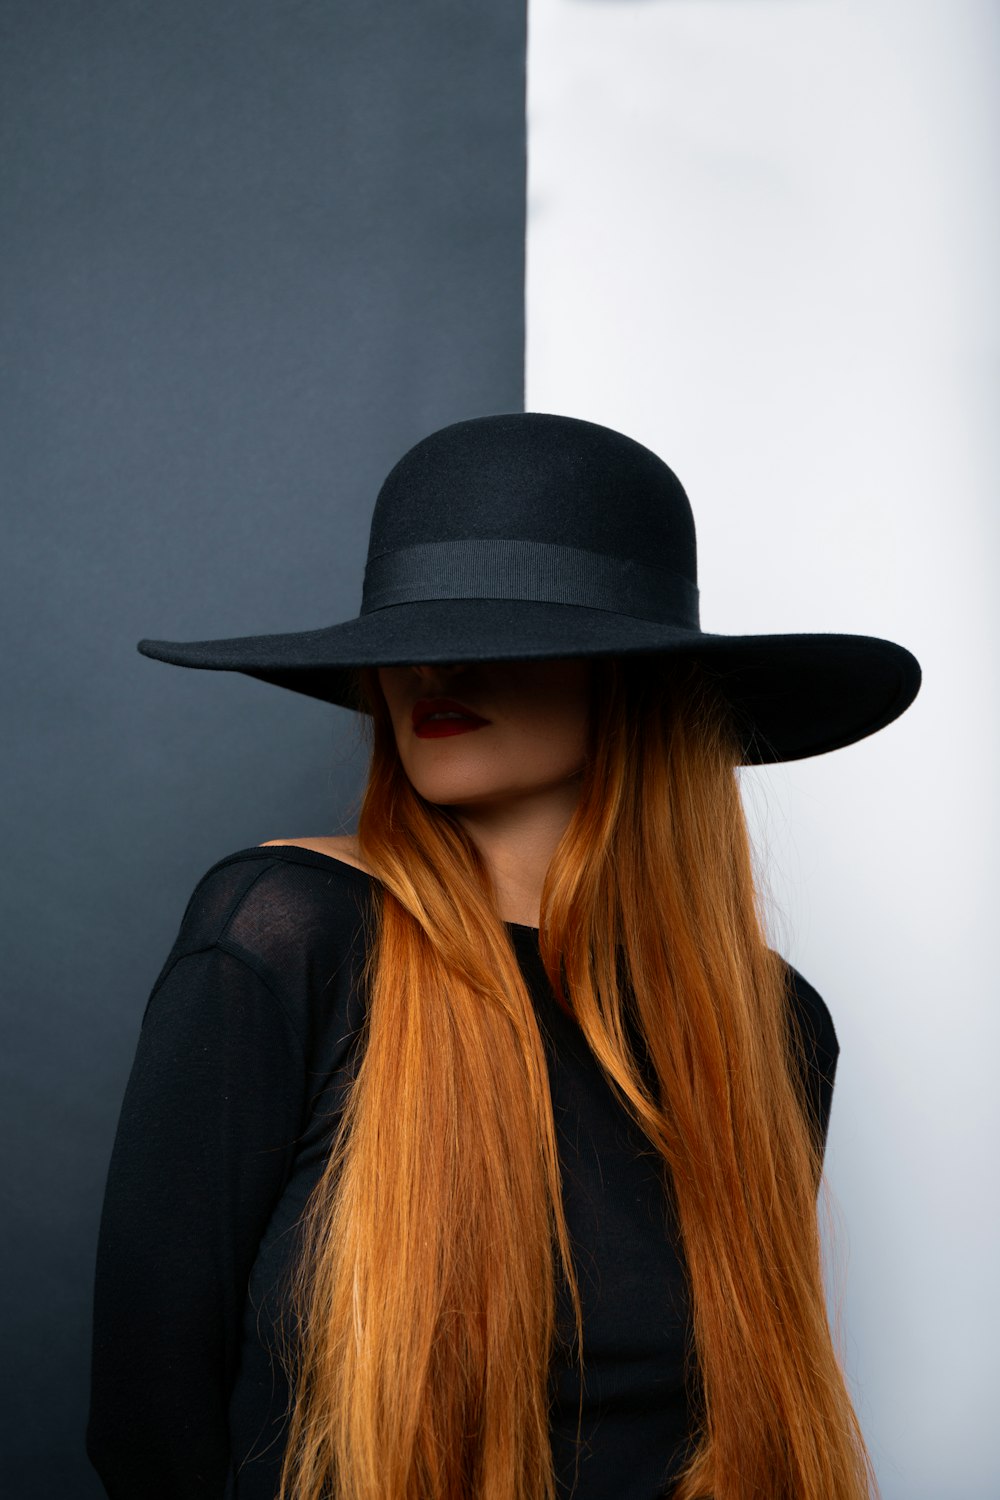 uma mulher com cabelos ruivos longos vestindo um chapéu preto